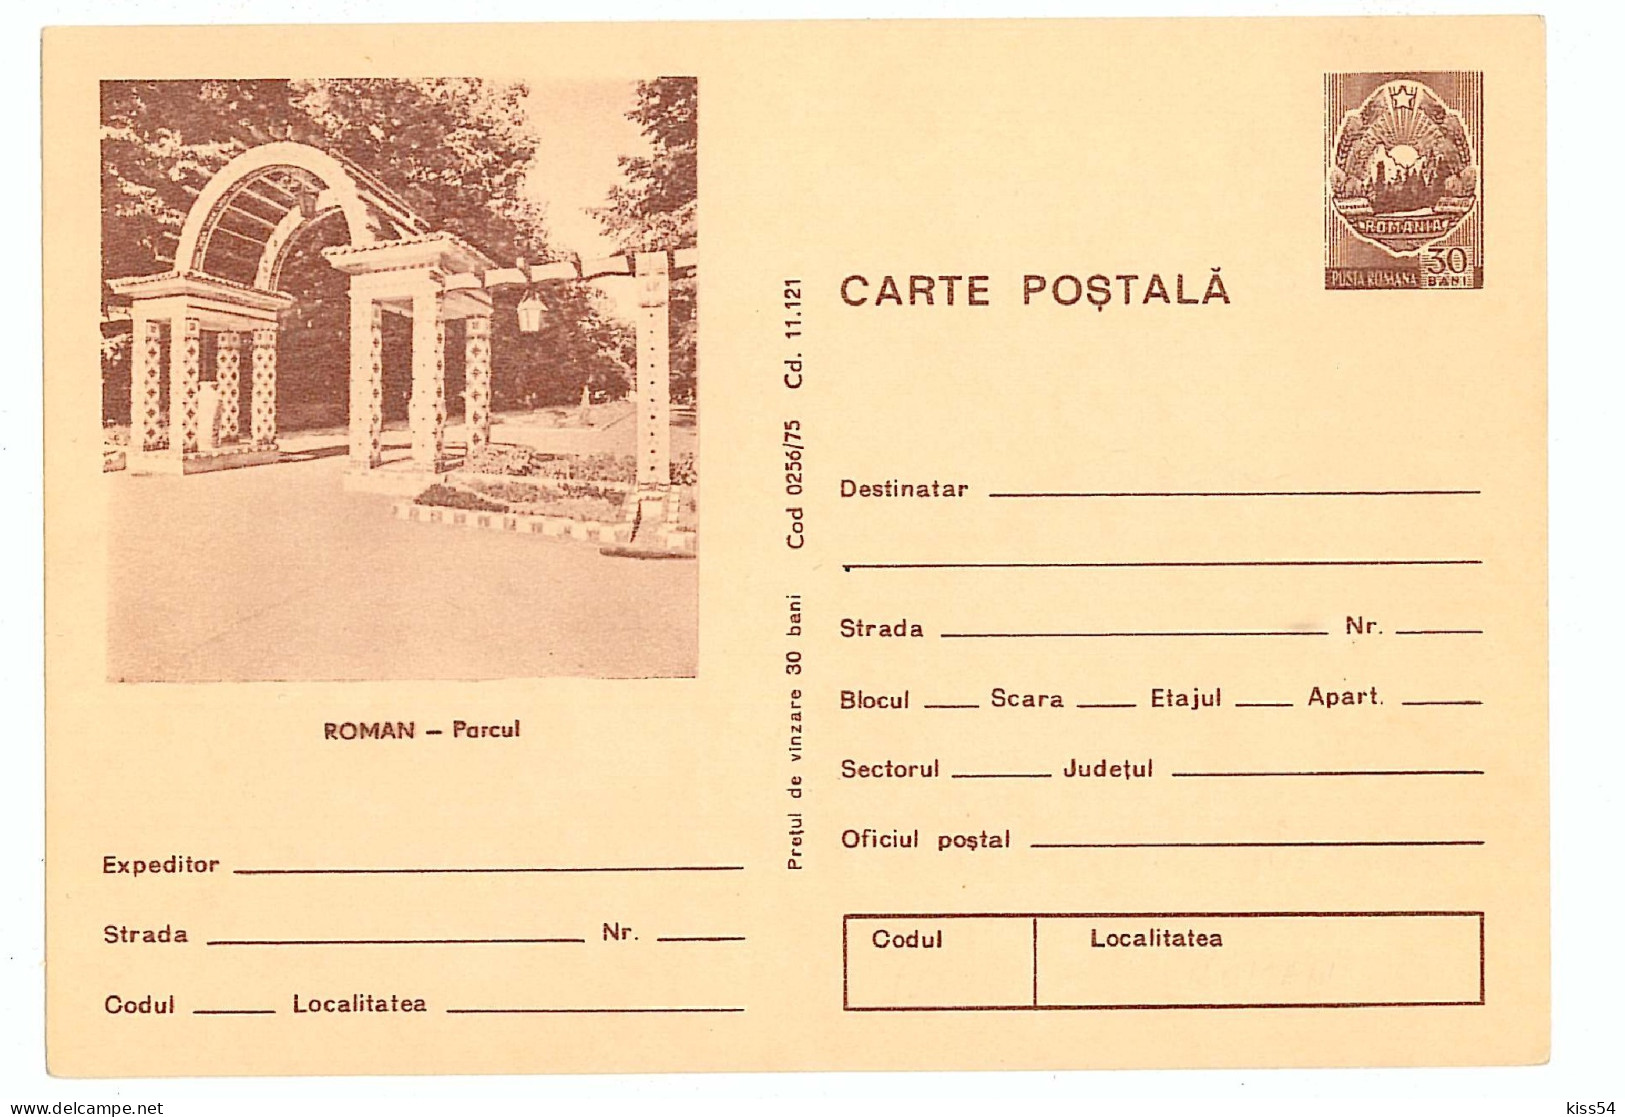 IP 75 - 256 ROMAN, Park - Stationery - Unused - 1975 - Postal Stationery